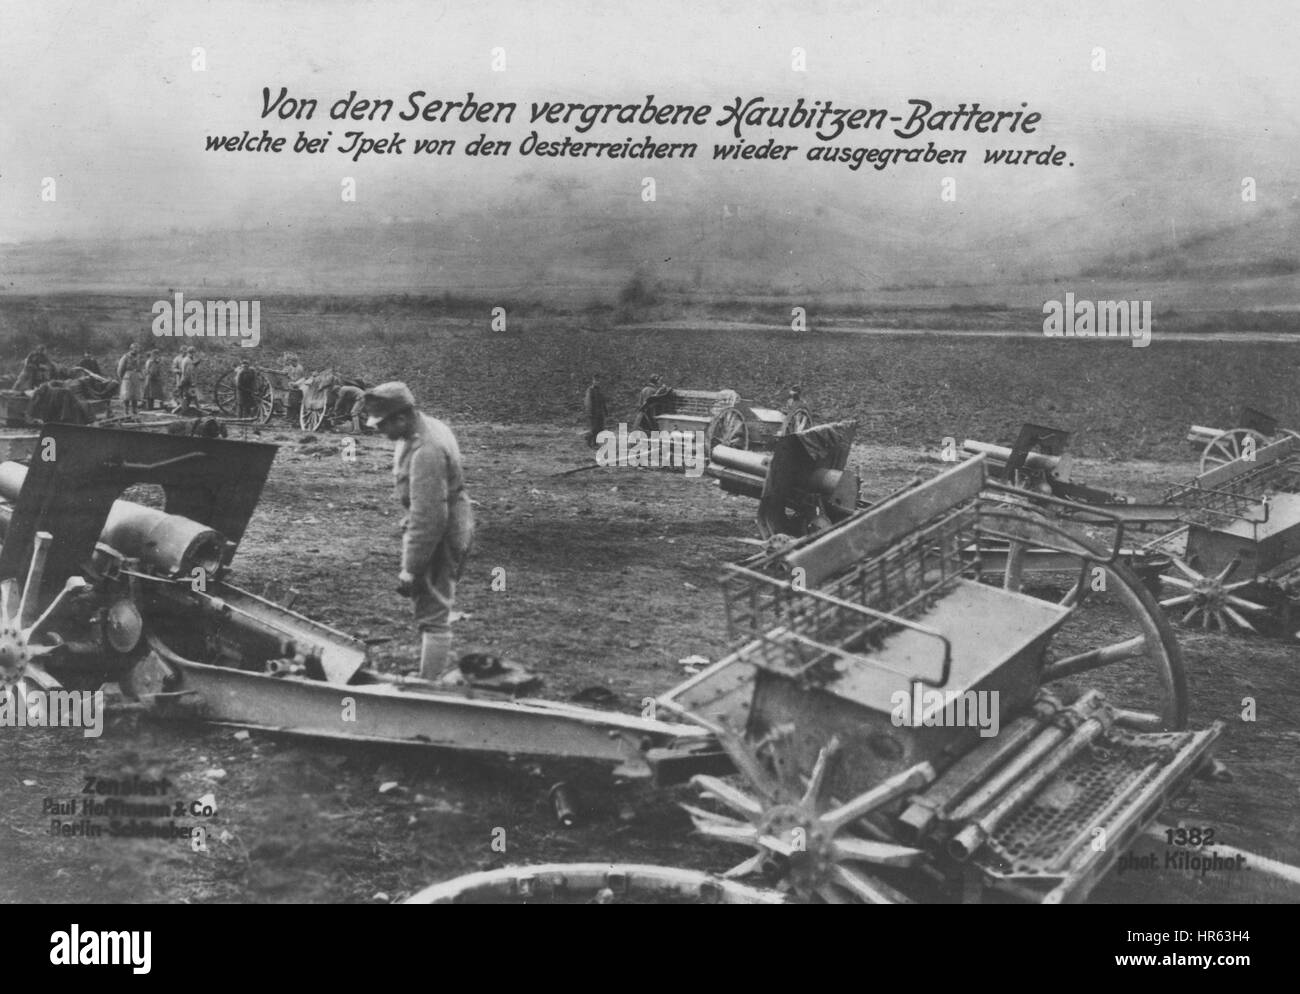 German World War I fotografische Ansichtskarte mit österreichischen Soldaten ausheben Waffen begraben durch serbische Truppen, 1915. Von der New York Public Library. Stockfoto